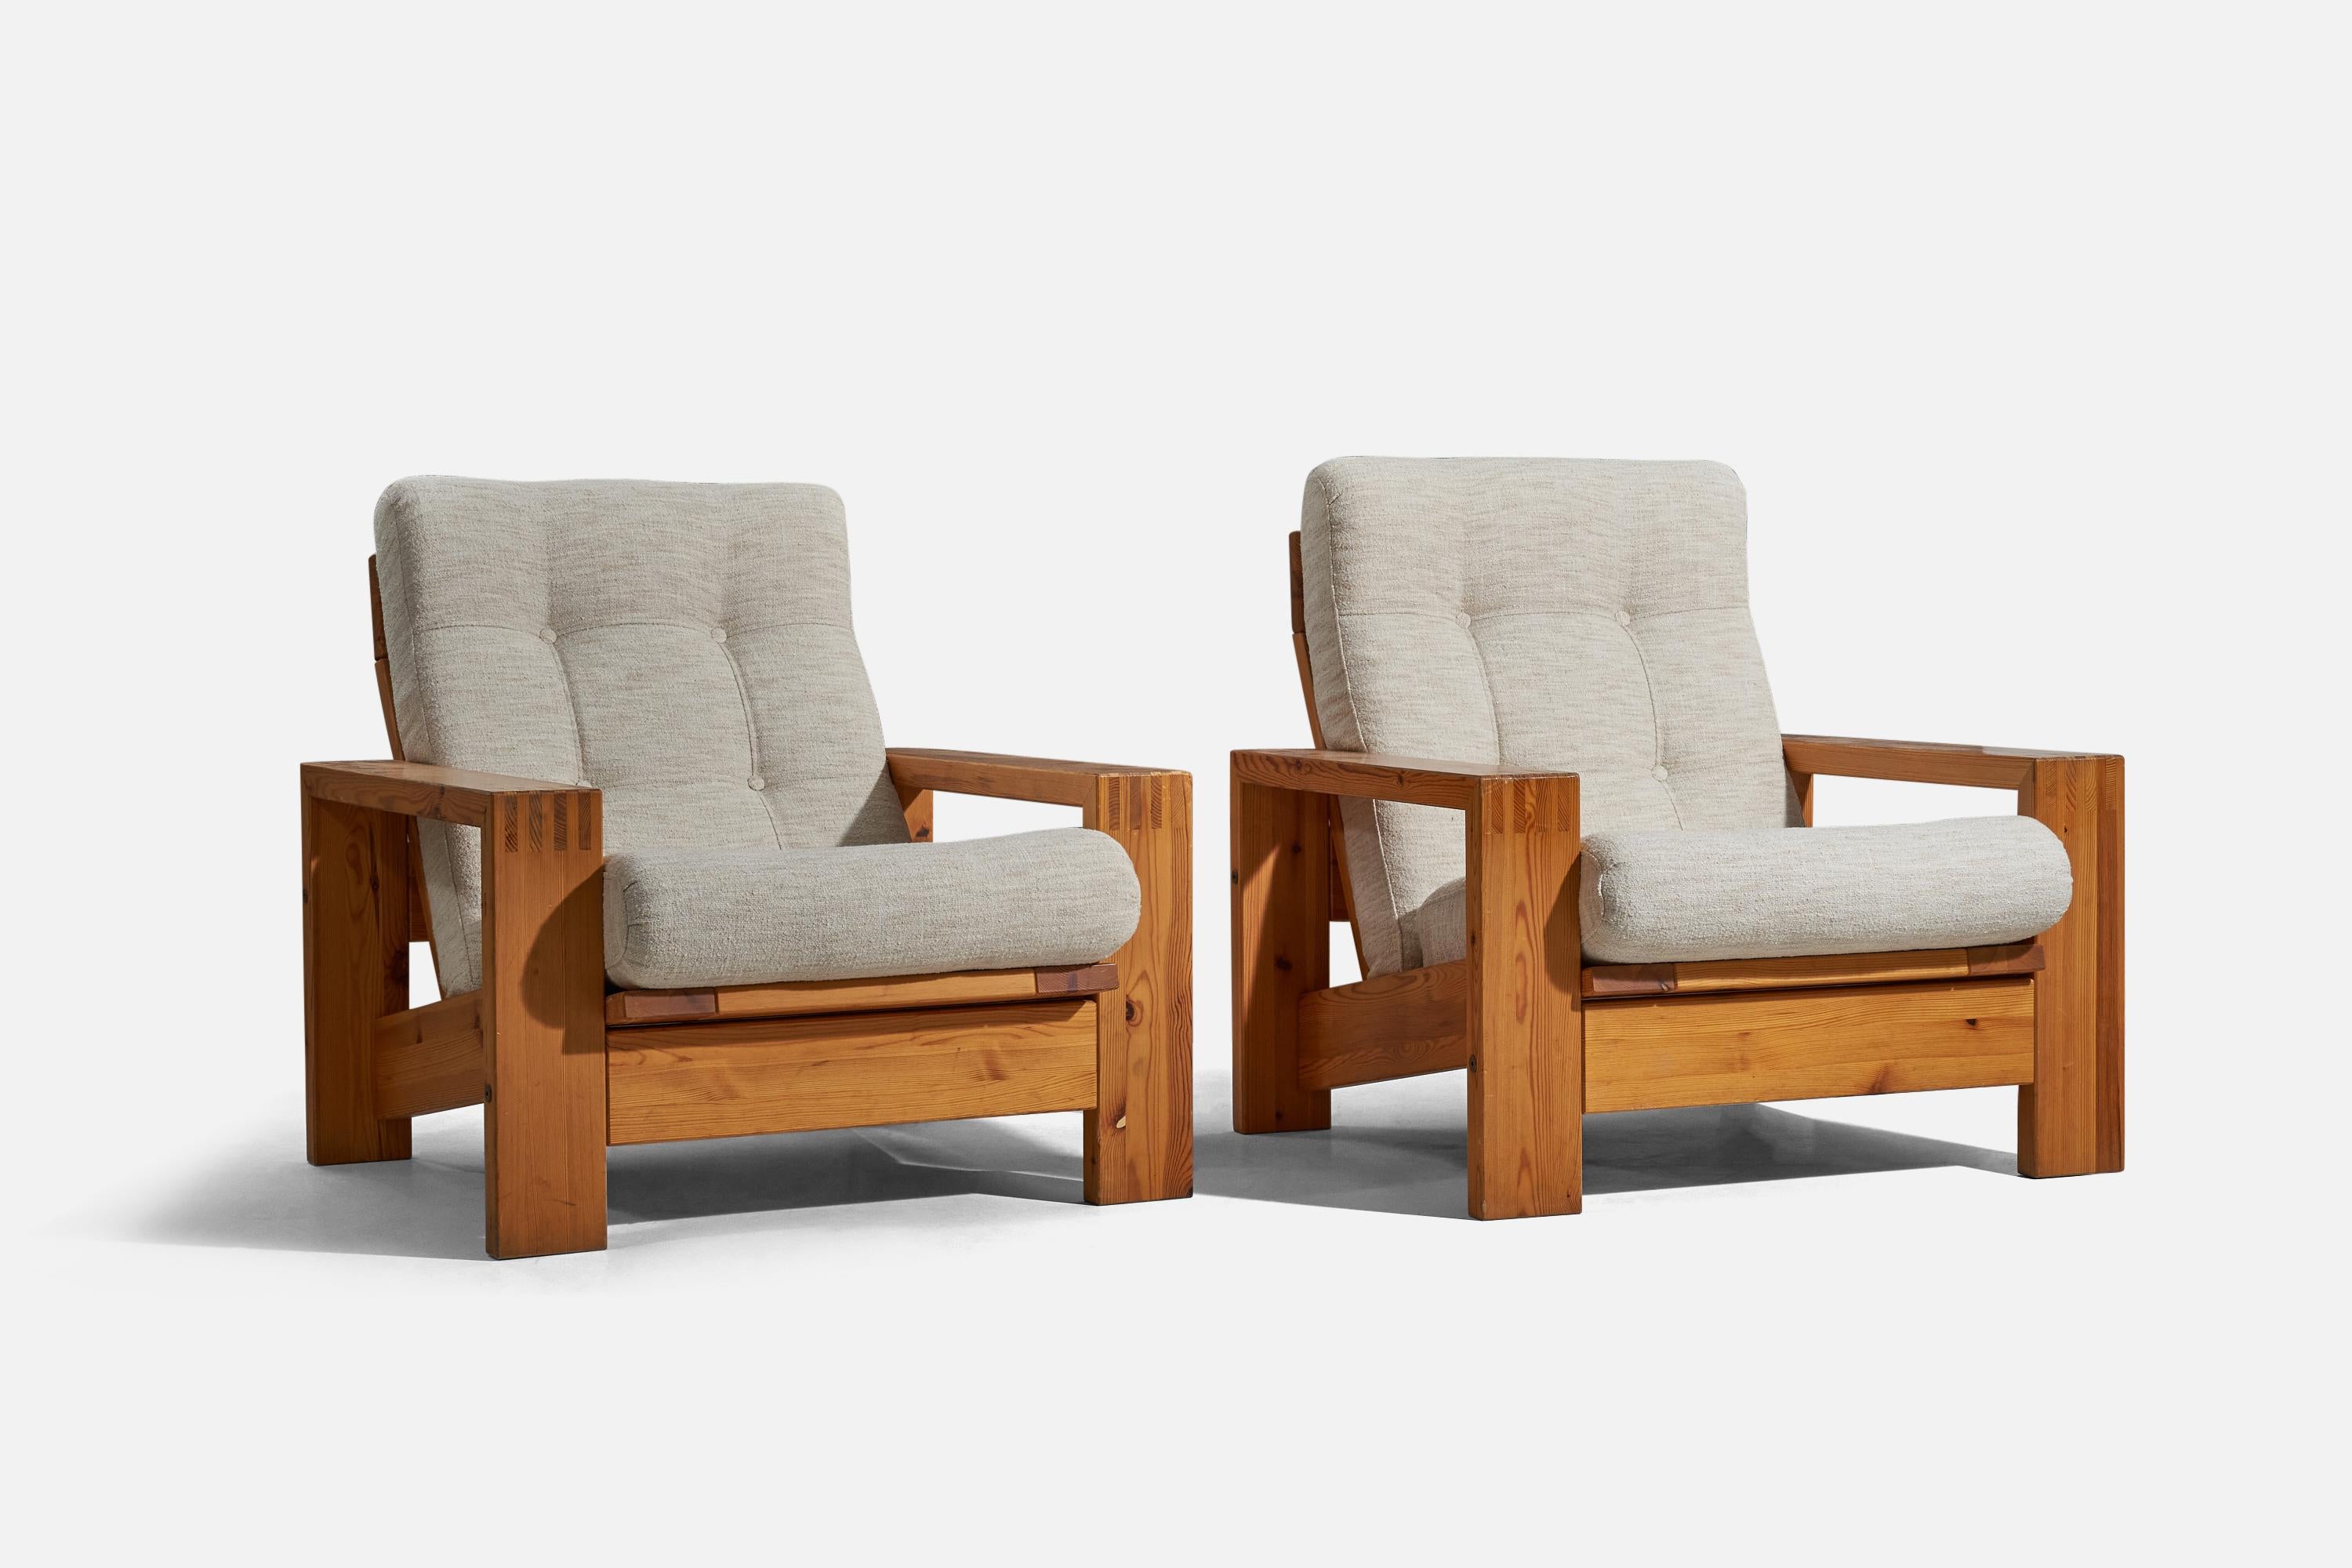 Paire de chaises longues en pin et en tissu, conçues et produites en Finlande, années 1970. 

